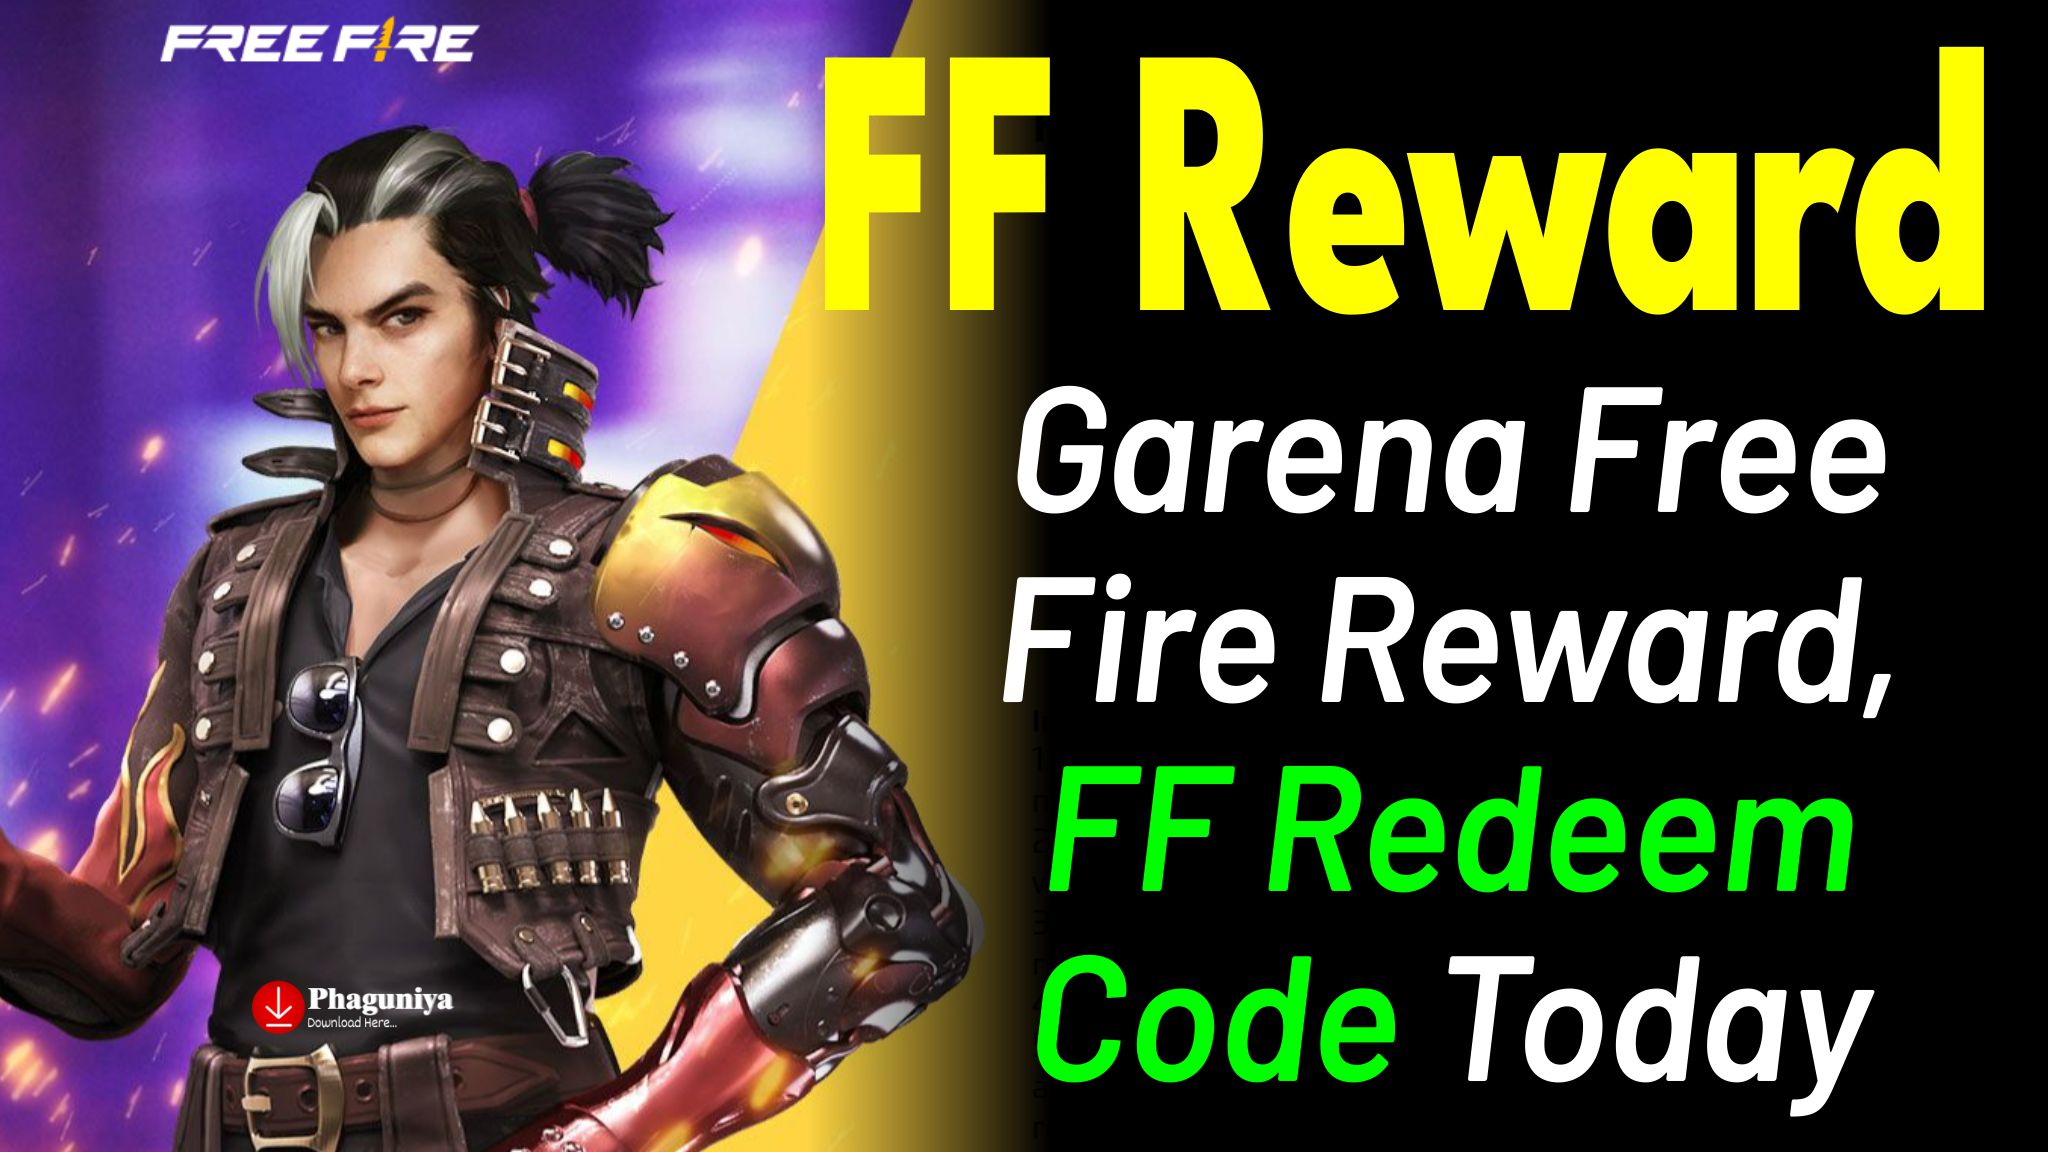 ff reward, ff reward code, ff reward india server, ff reward redeem code, ff reward redemption site, ff reward garena, garena ff reward, ff reward redemption, ff reward redeem, ff reward site,